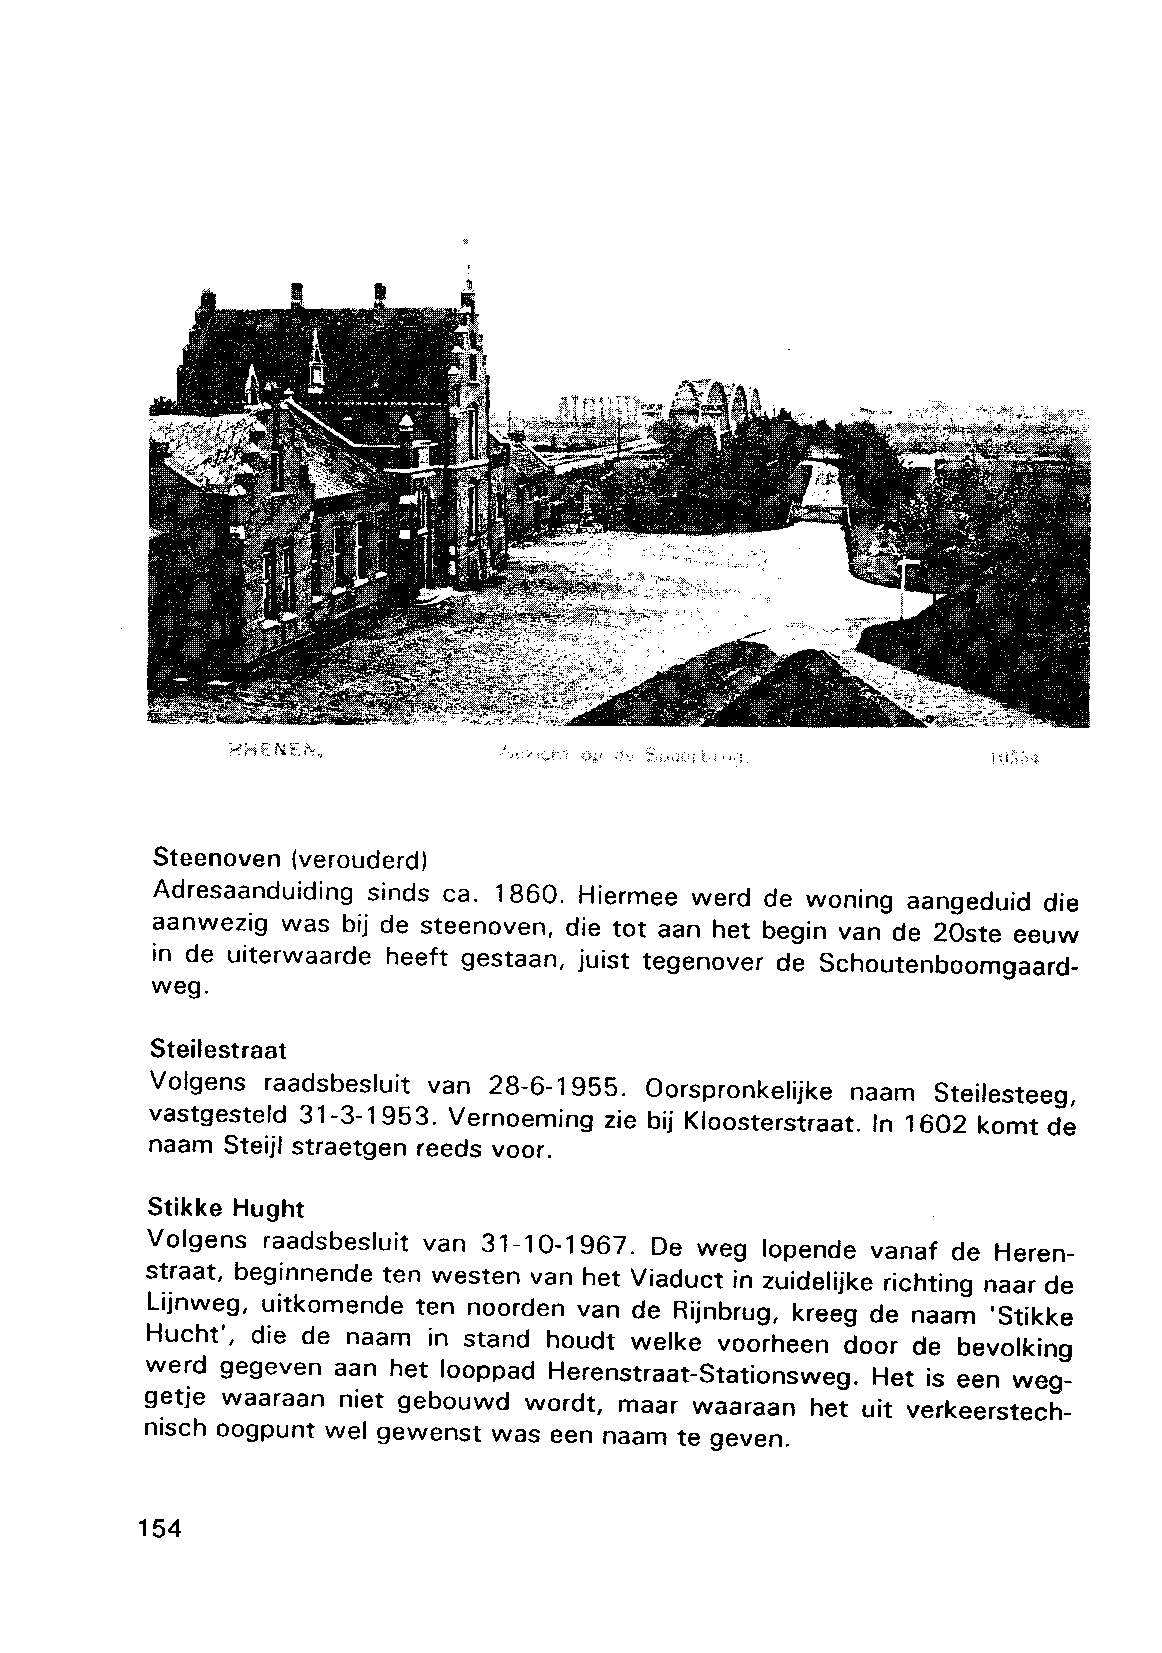 Steenoven (verouderd) Adresaanduiding sinds ca. 1860.